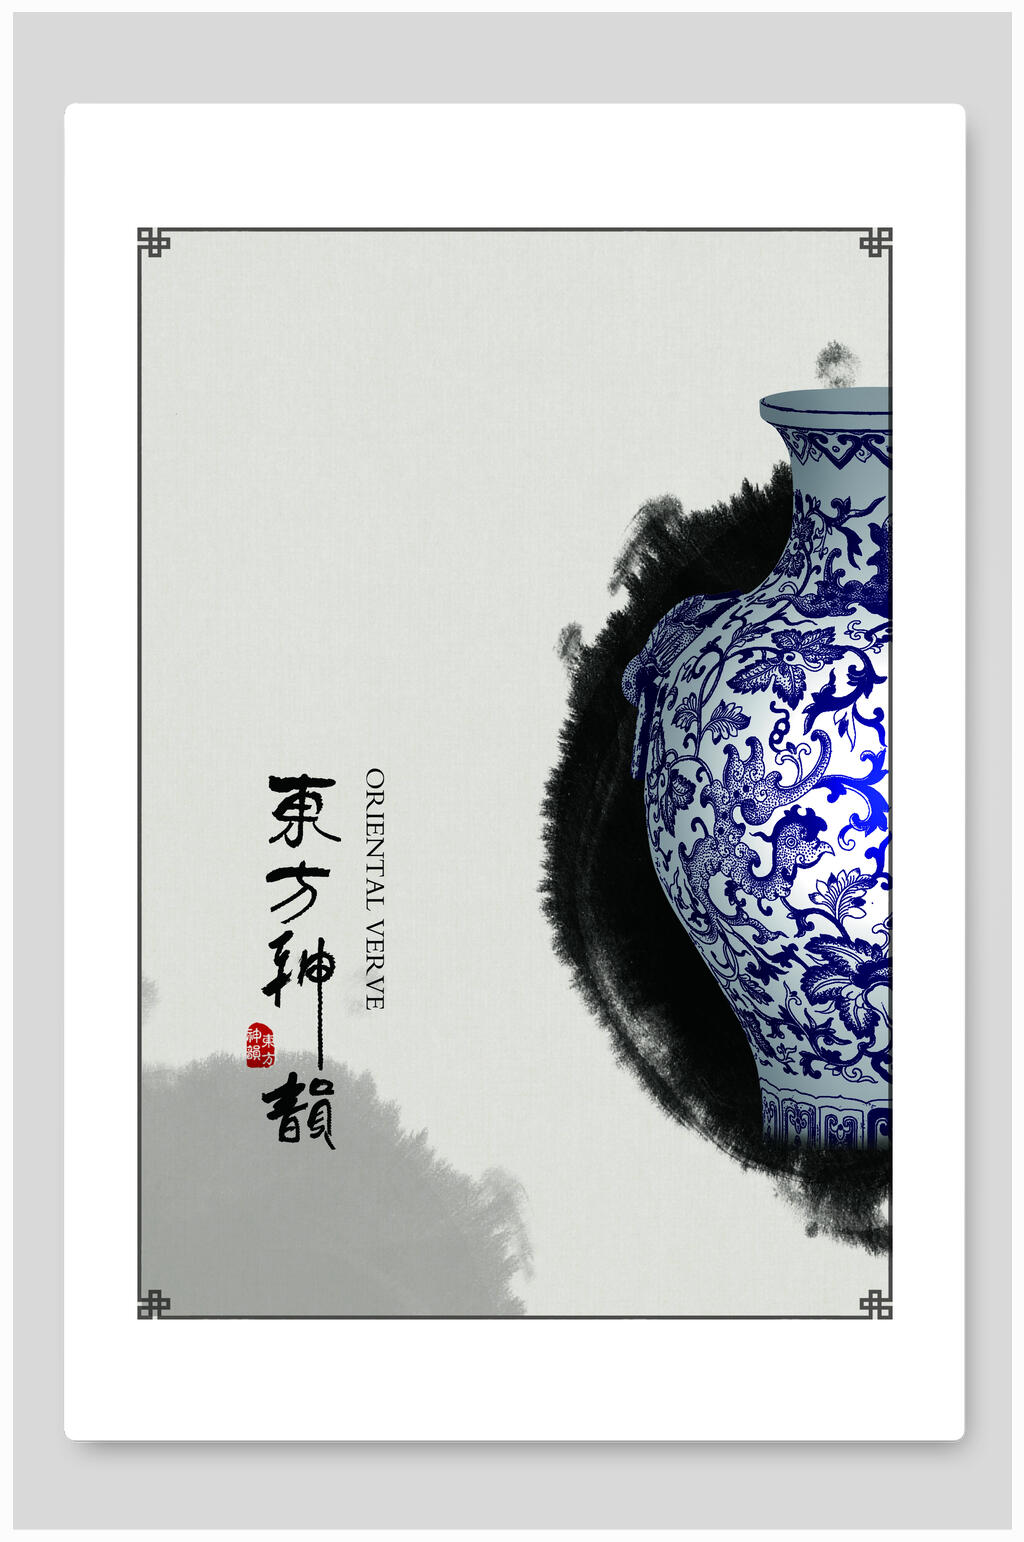 中国风手机壁纸 青花图片